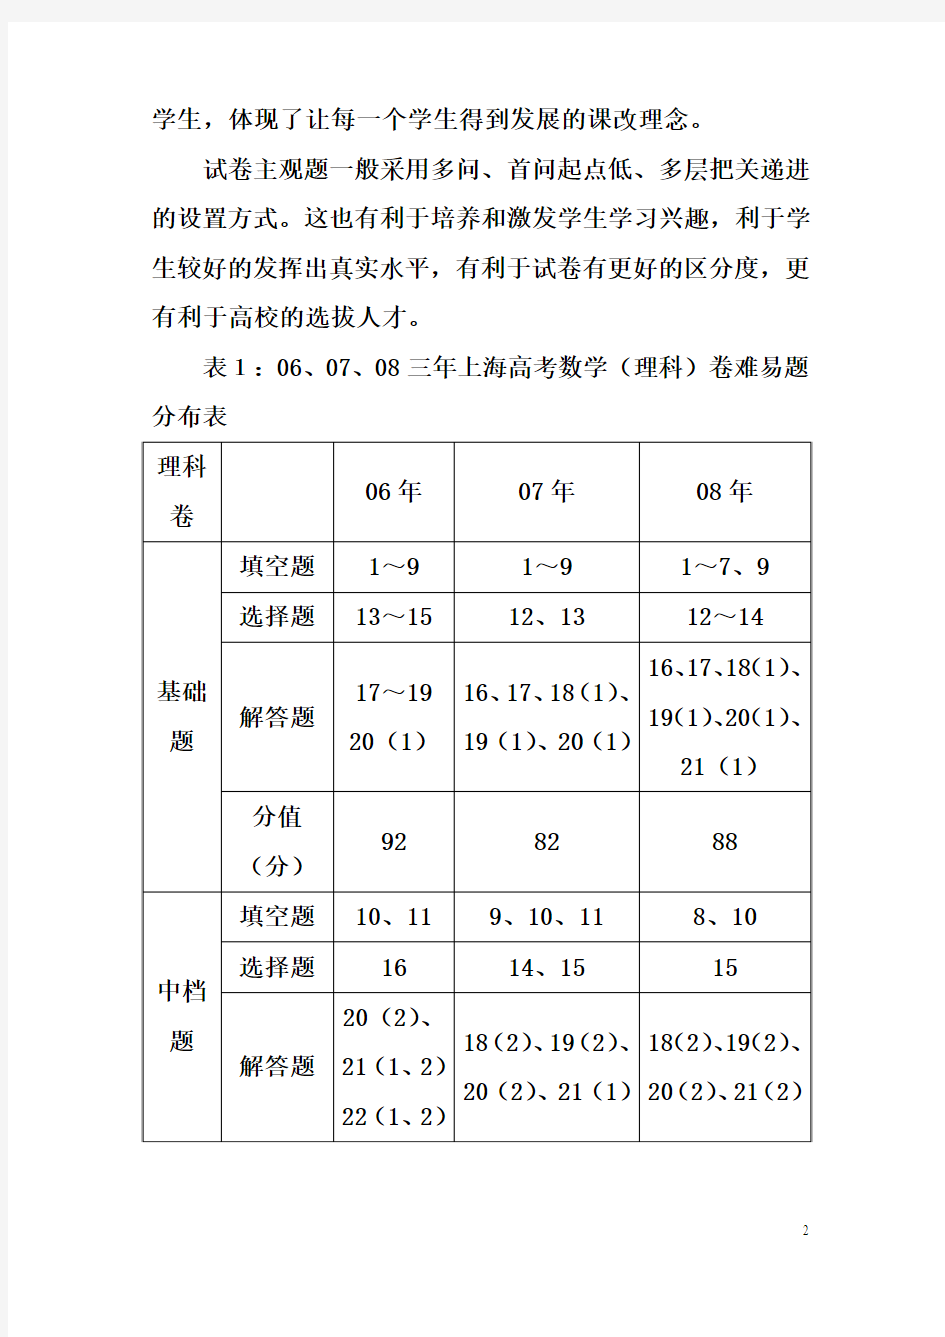 上海市高考试卷分析